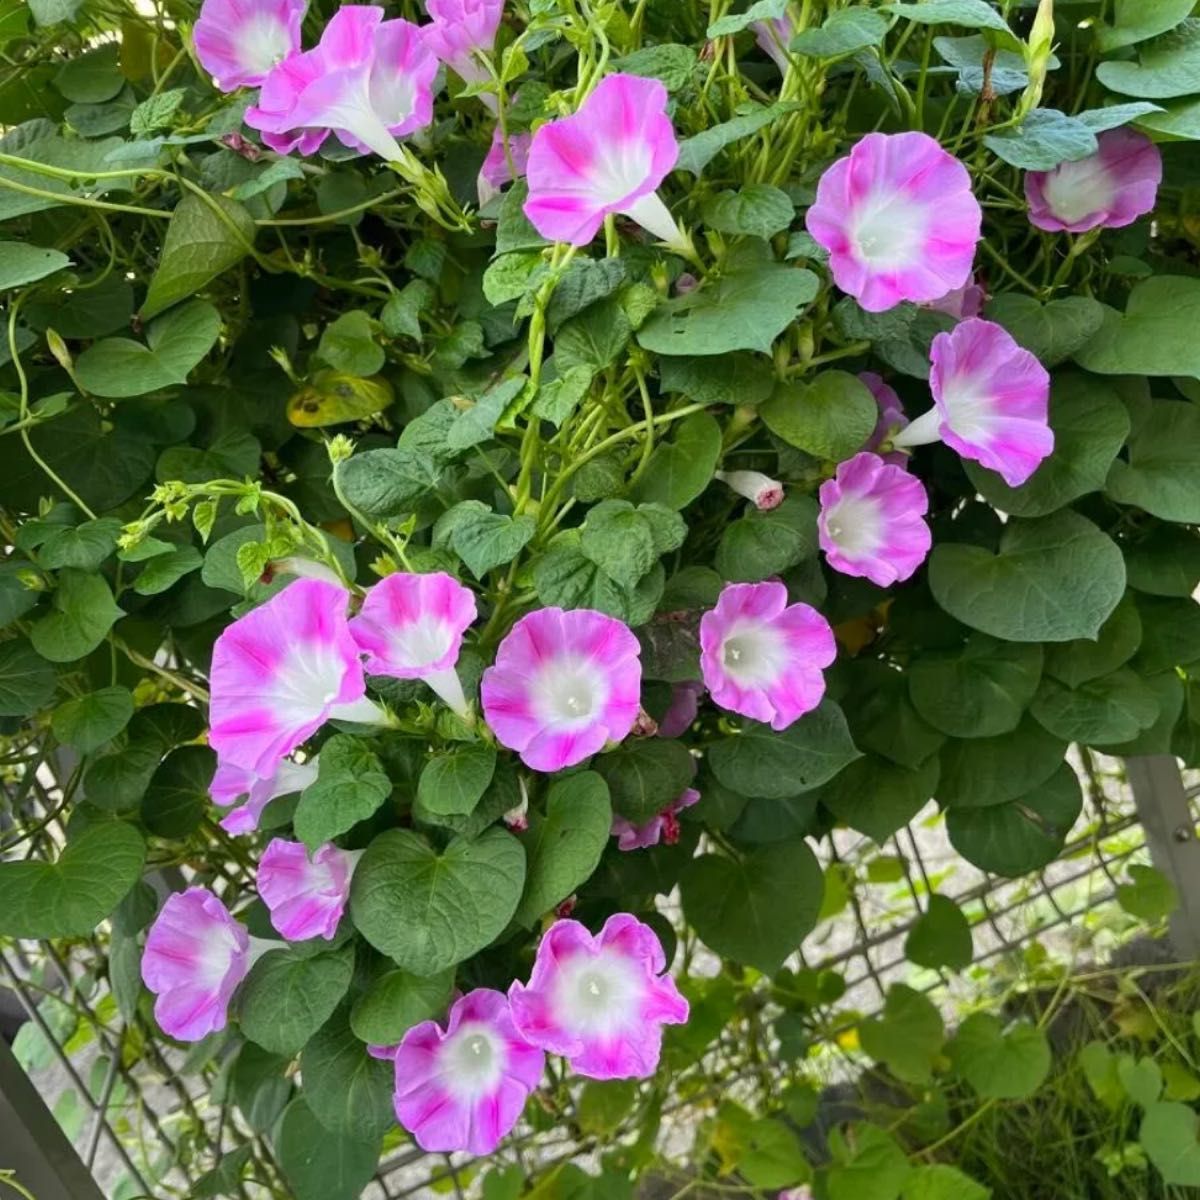 ちょっと変わった可愛い花びらピンク色西洋朝顔の種3gあ アサガオのタネグリーンカーテンフェンスエコカーテン省エネ 多花性